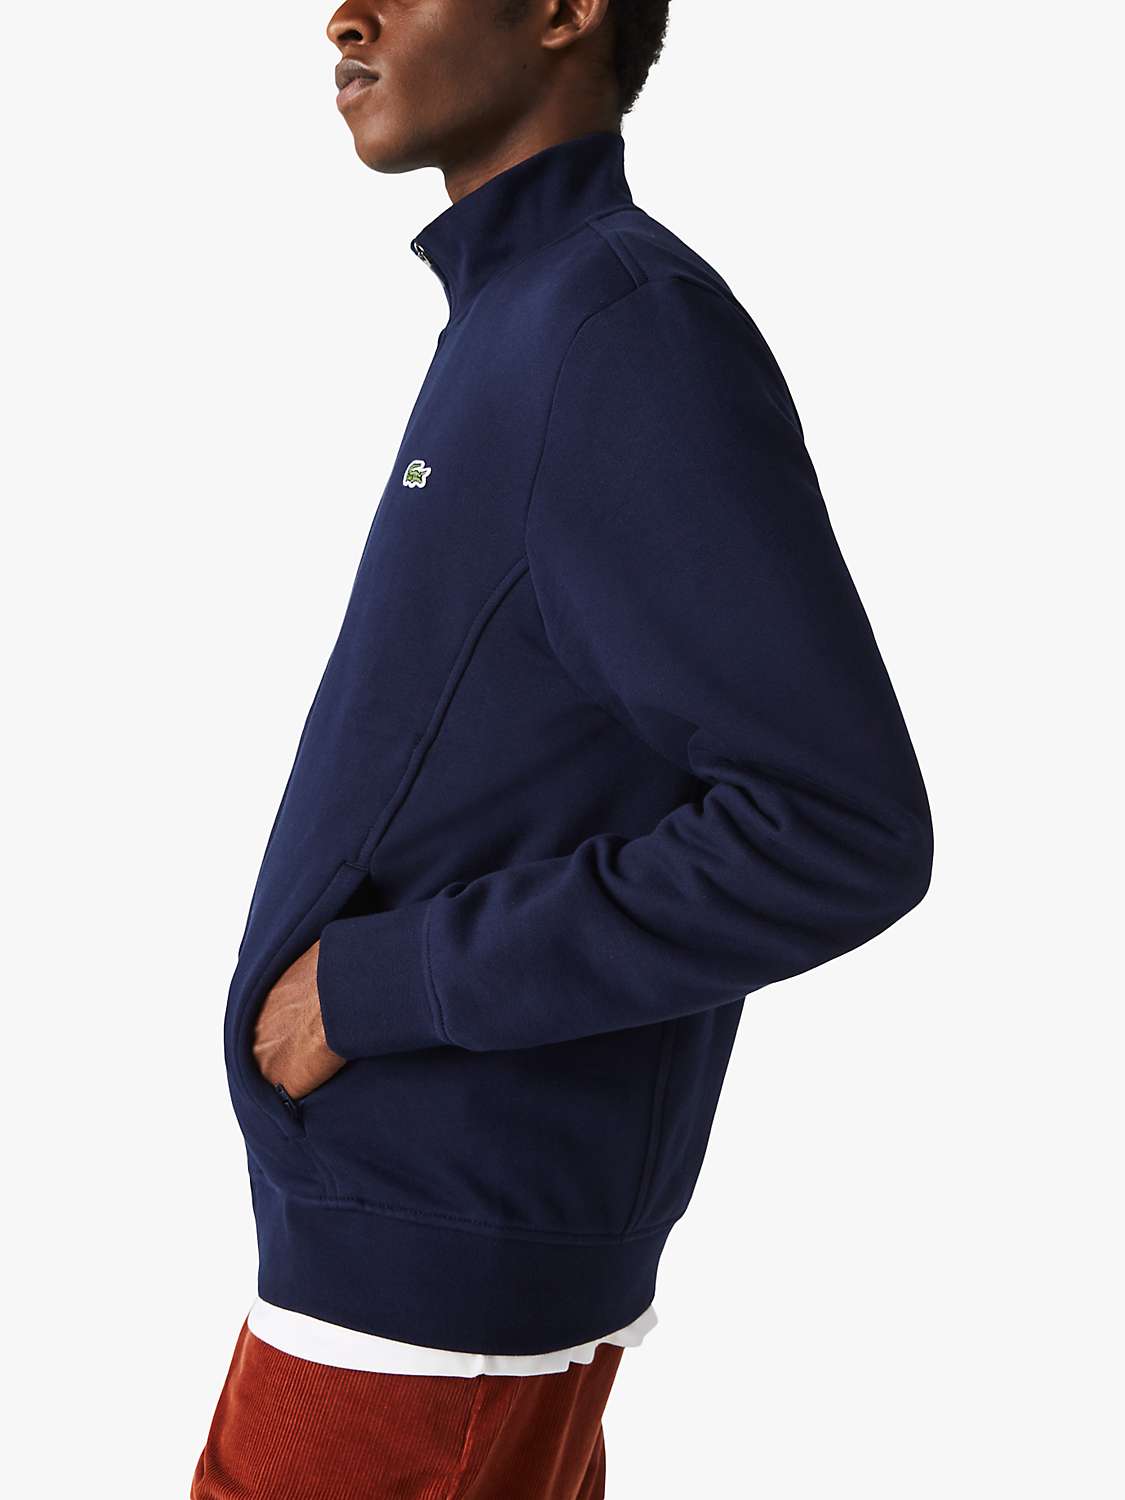 Buy Lacoste SPORT Cotton Blend Fleece Zip Sweatshirt, Navy Online at johnlewis.com